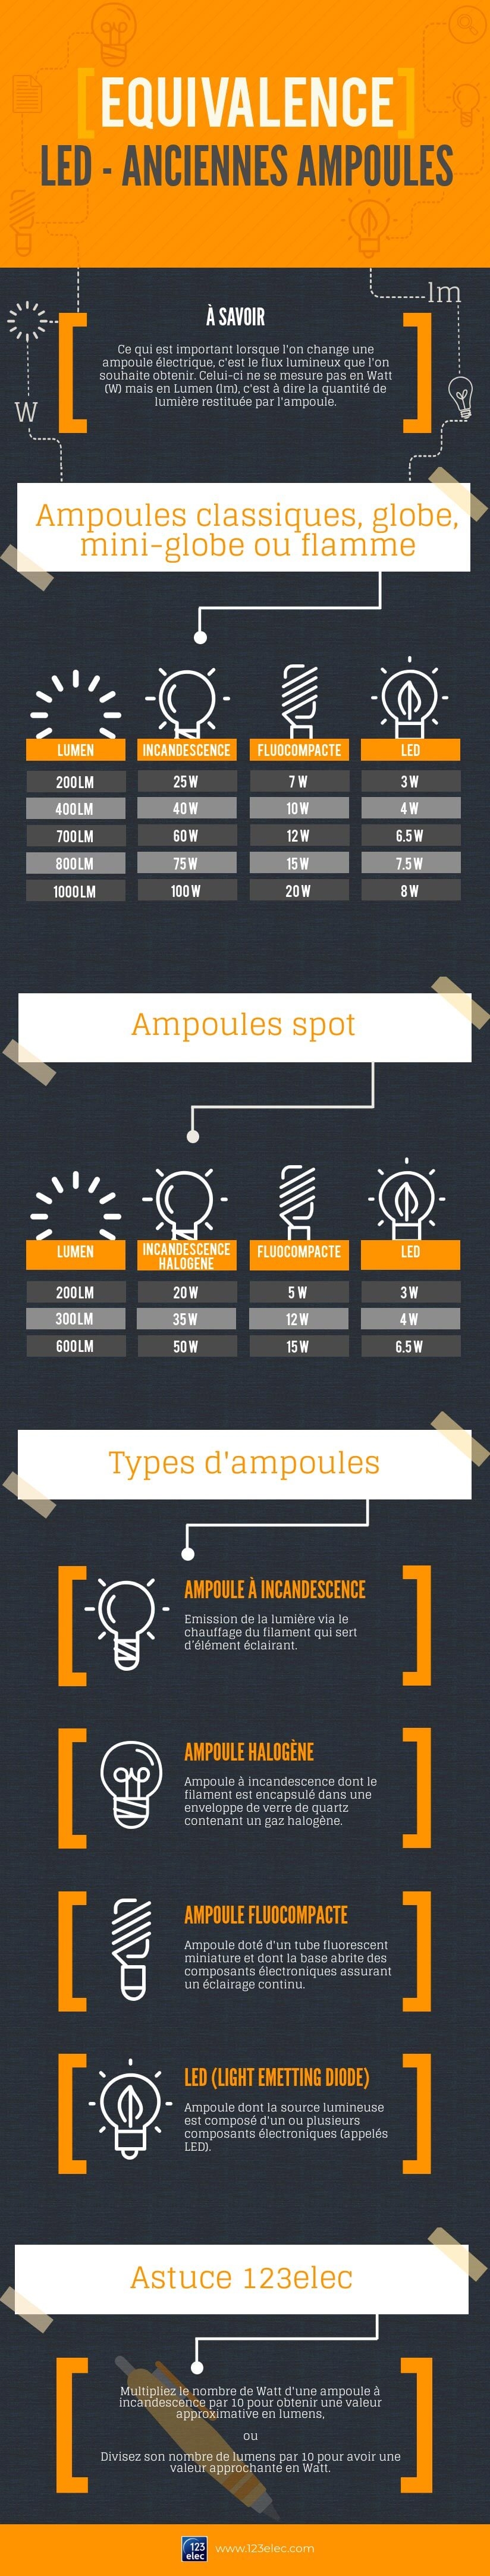 Infographie sur équivalence des ampoules LED